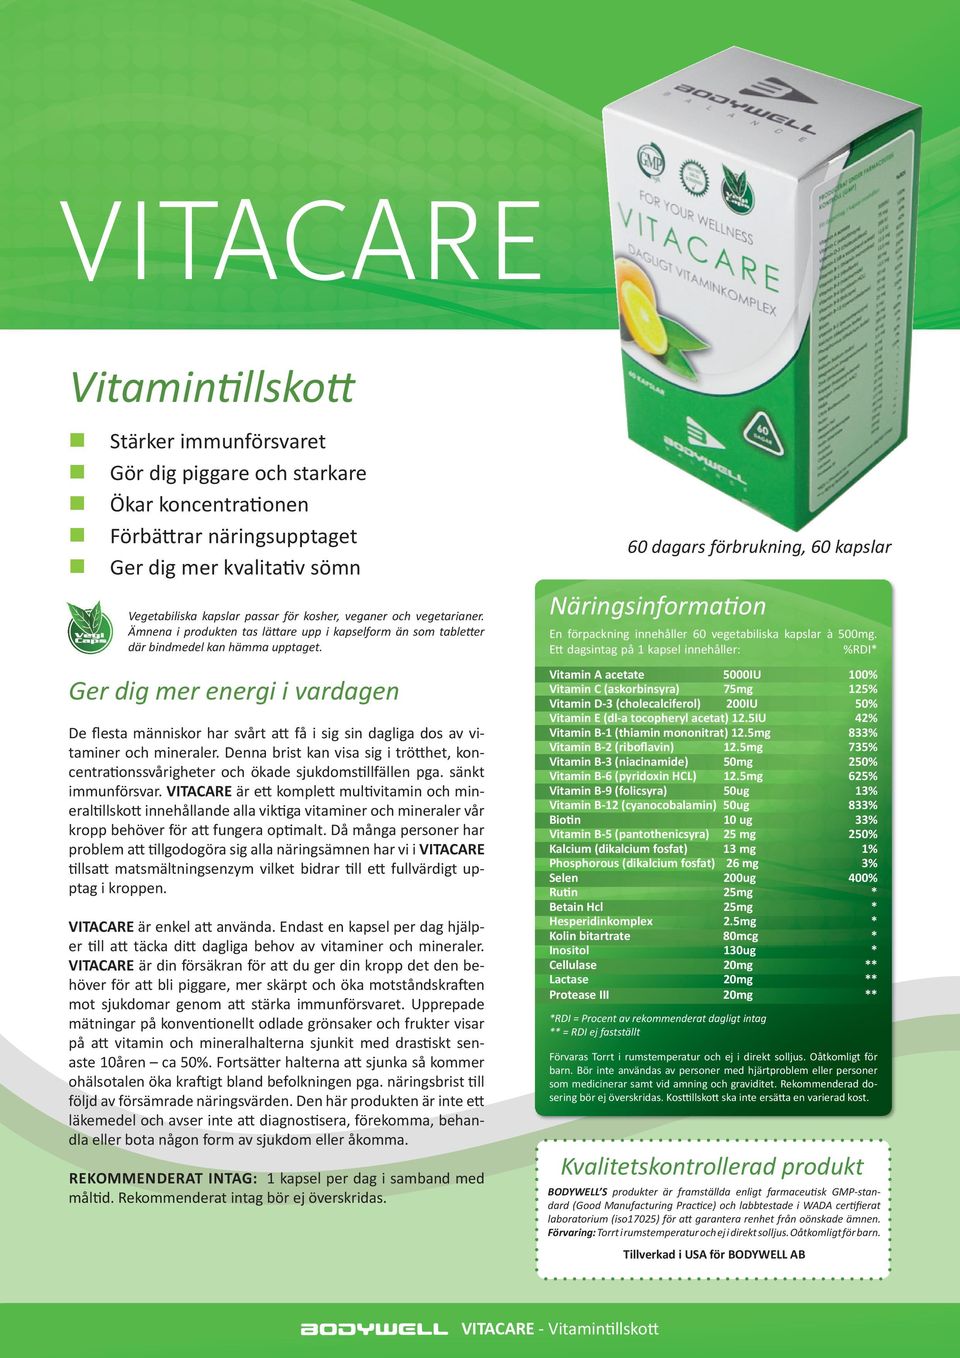 sänkt immunförsvar. VITACARE är ett komplett multivitamin och mineraltillskott innehållande alla viktiga vitaminer och mineraler vår kropp behöver för att fungera optimalt.